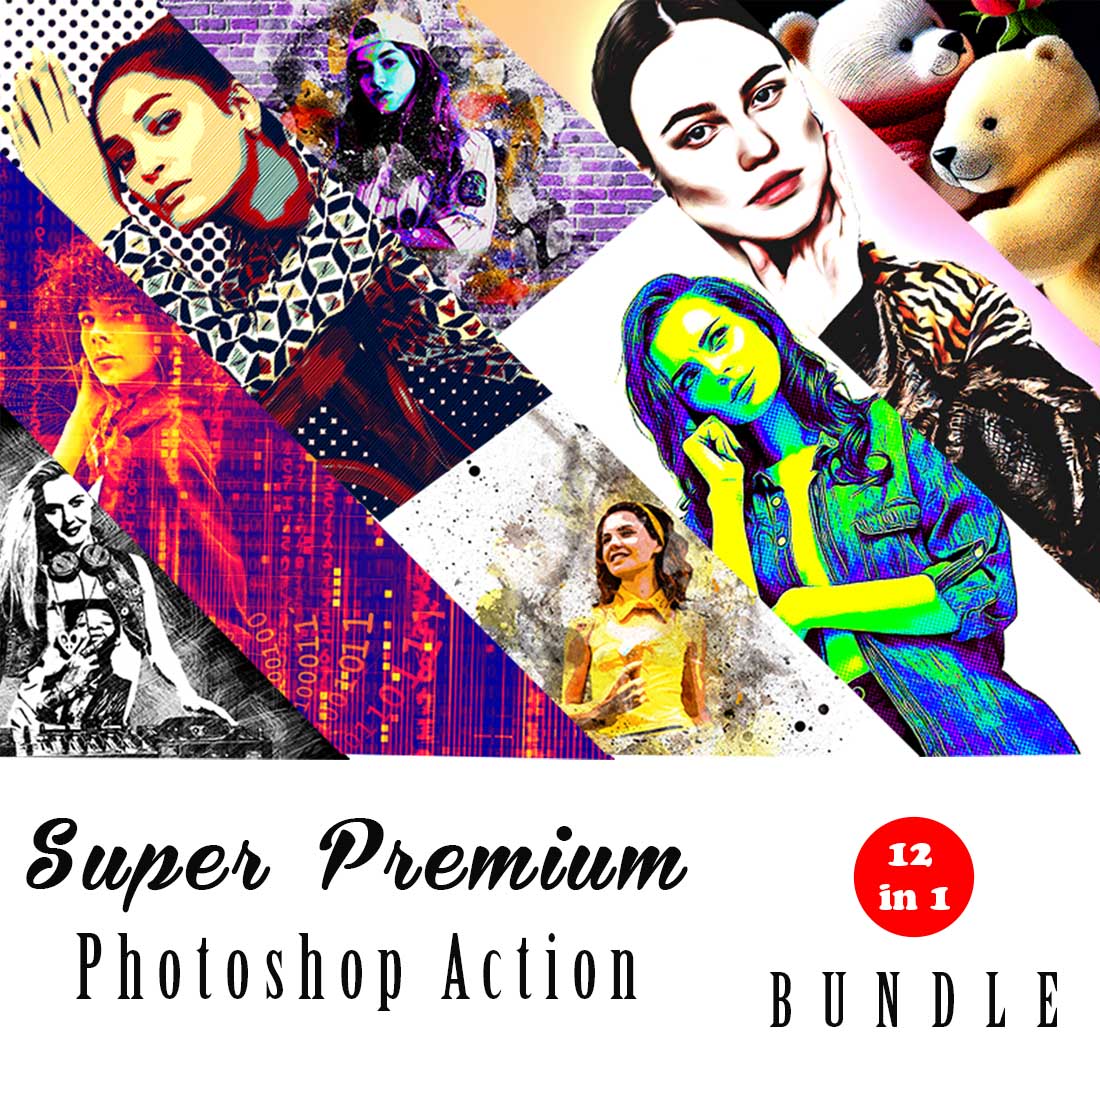 Super Premium Photoshop Action Bundle cover image.